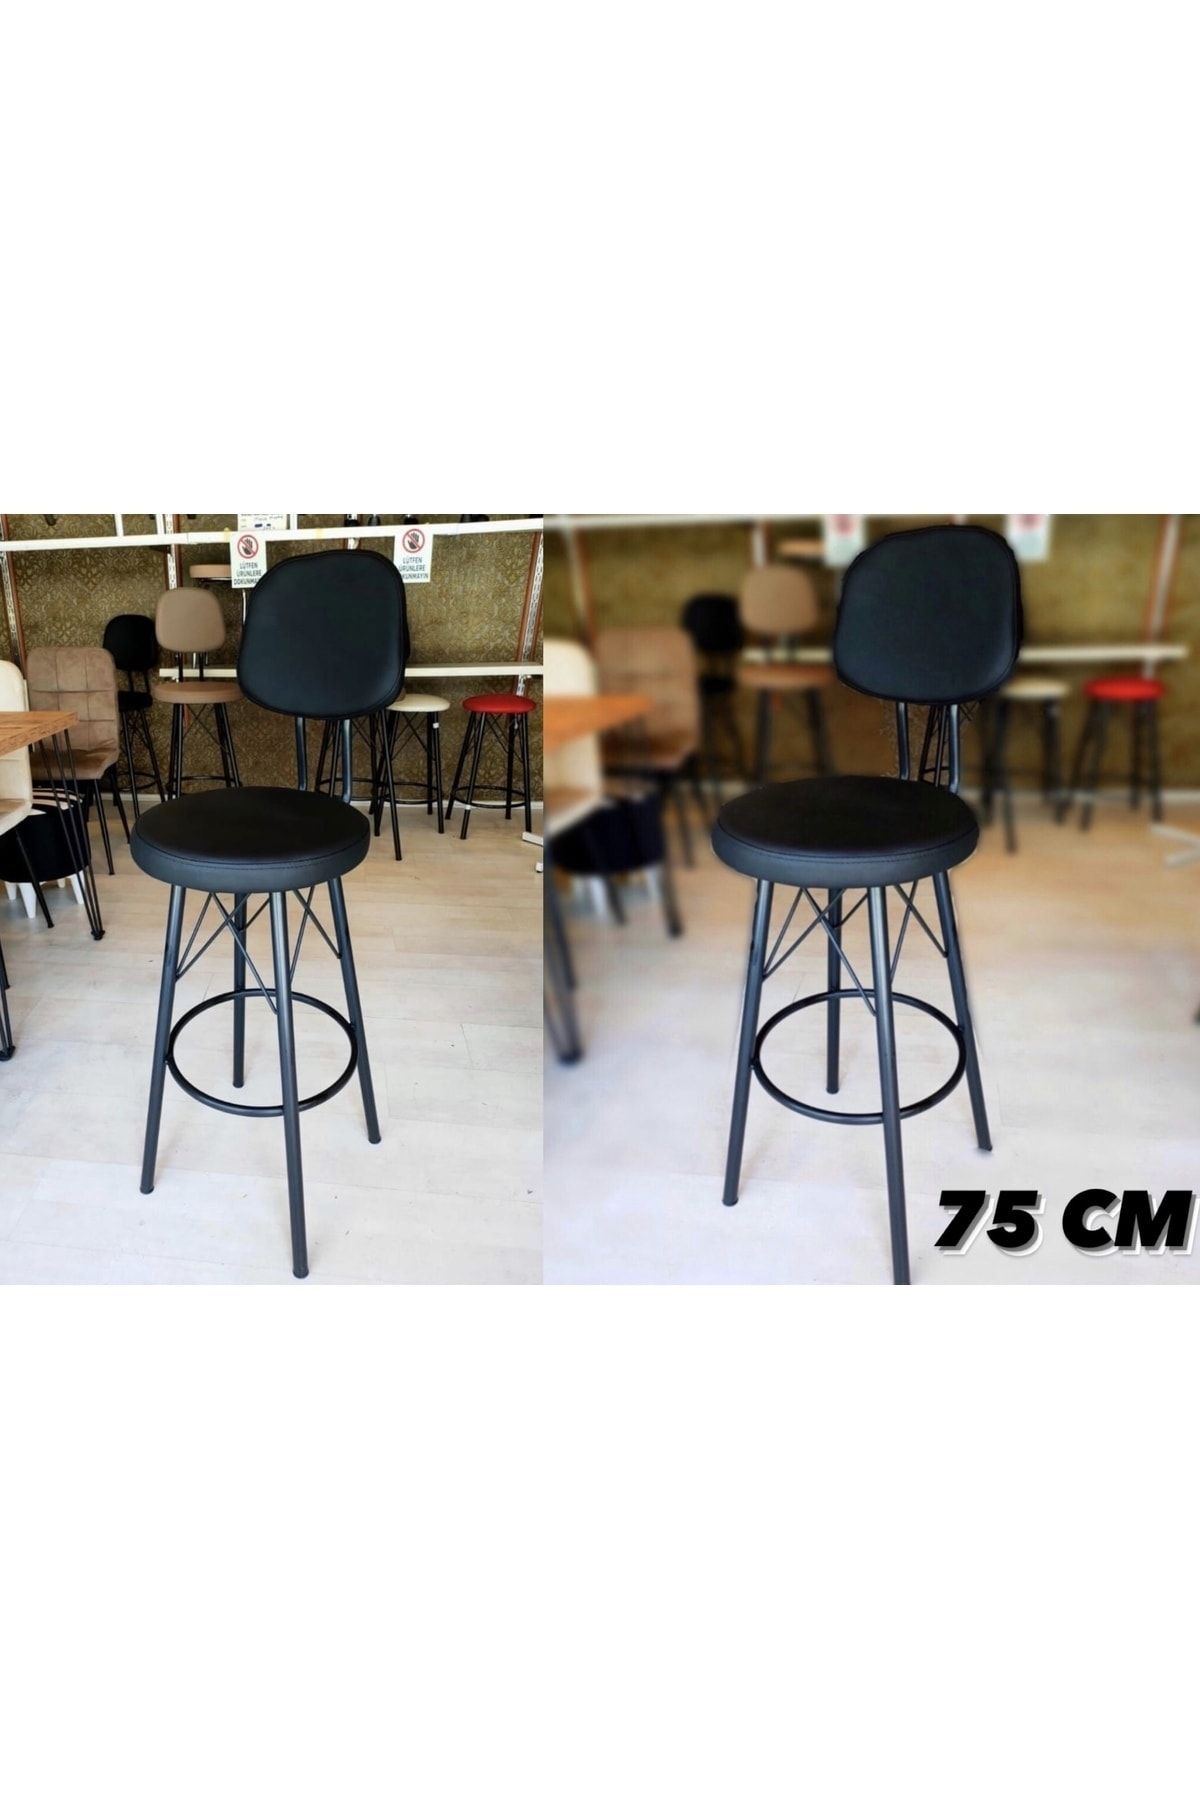 Sandalye Shop Dolce Bar Sandalyesi 75 Cm Siyah 2li.100 Ile 115 Cm Arası Ada&masalara Uygundur